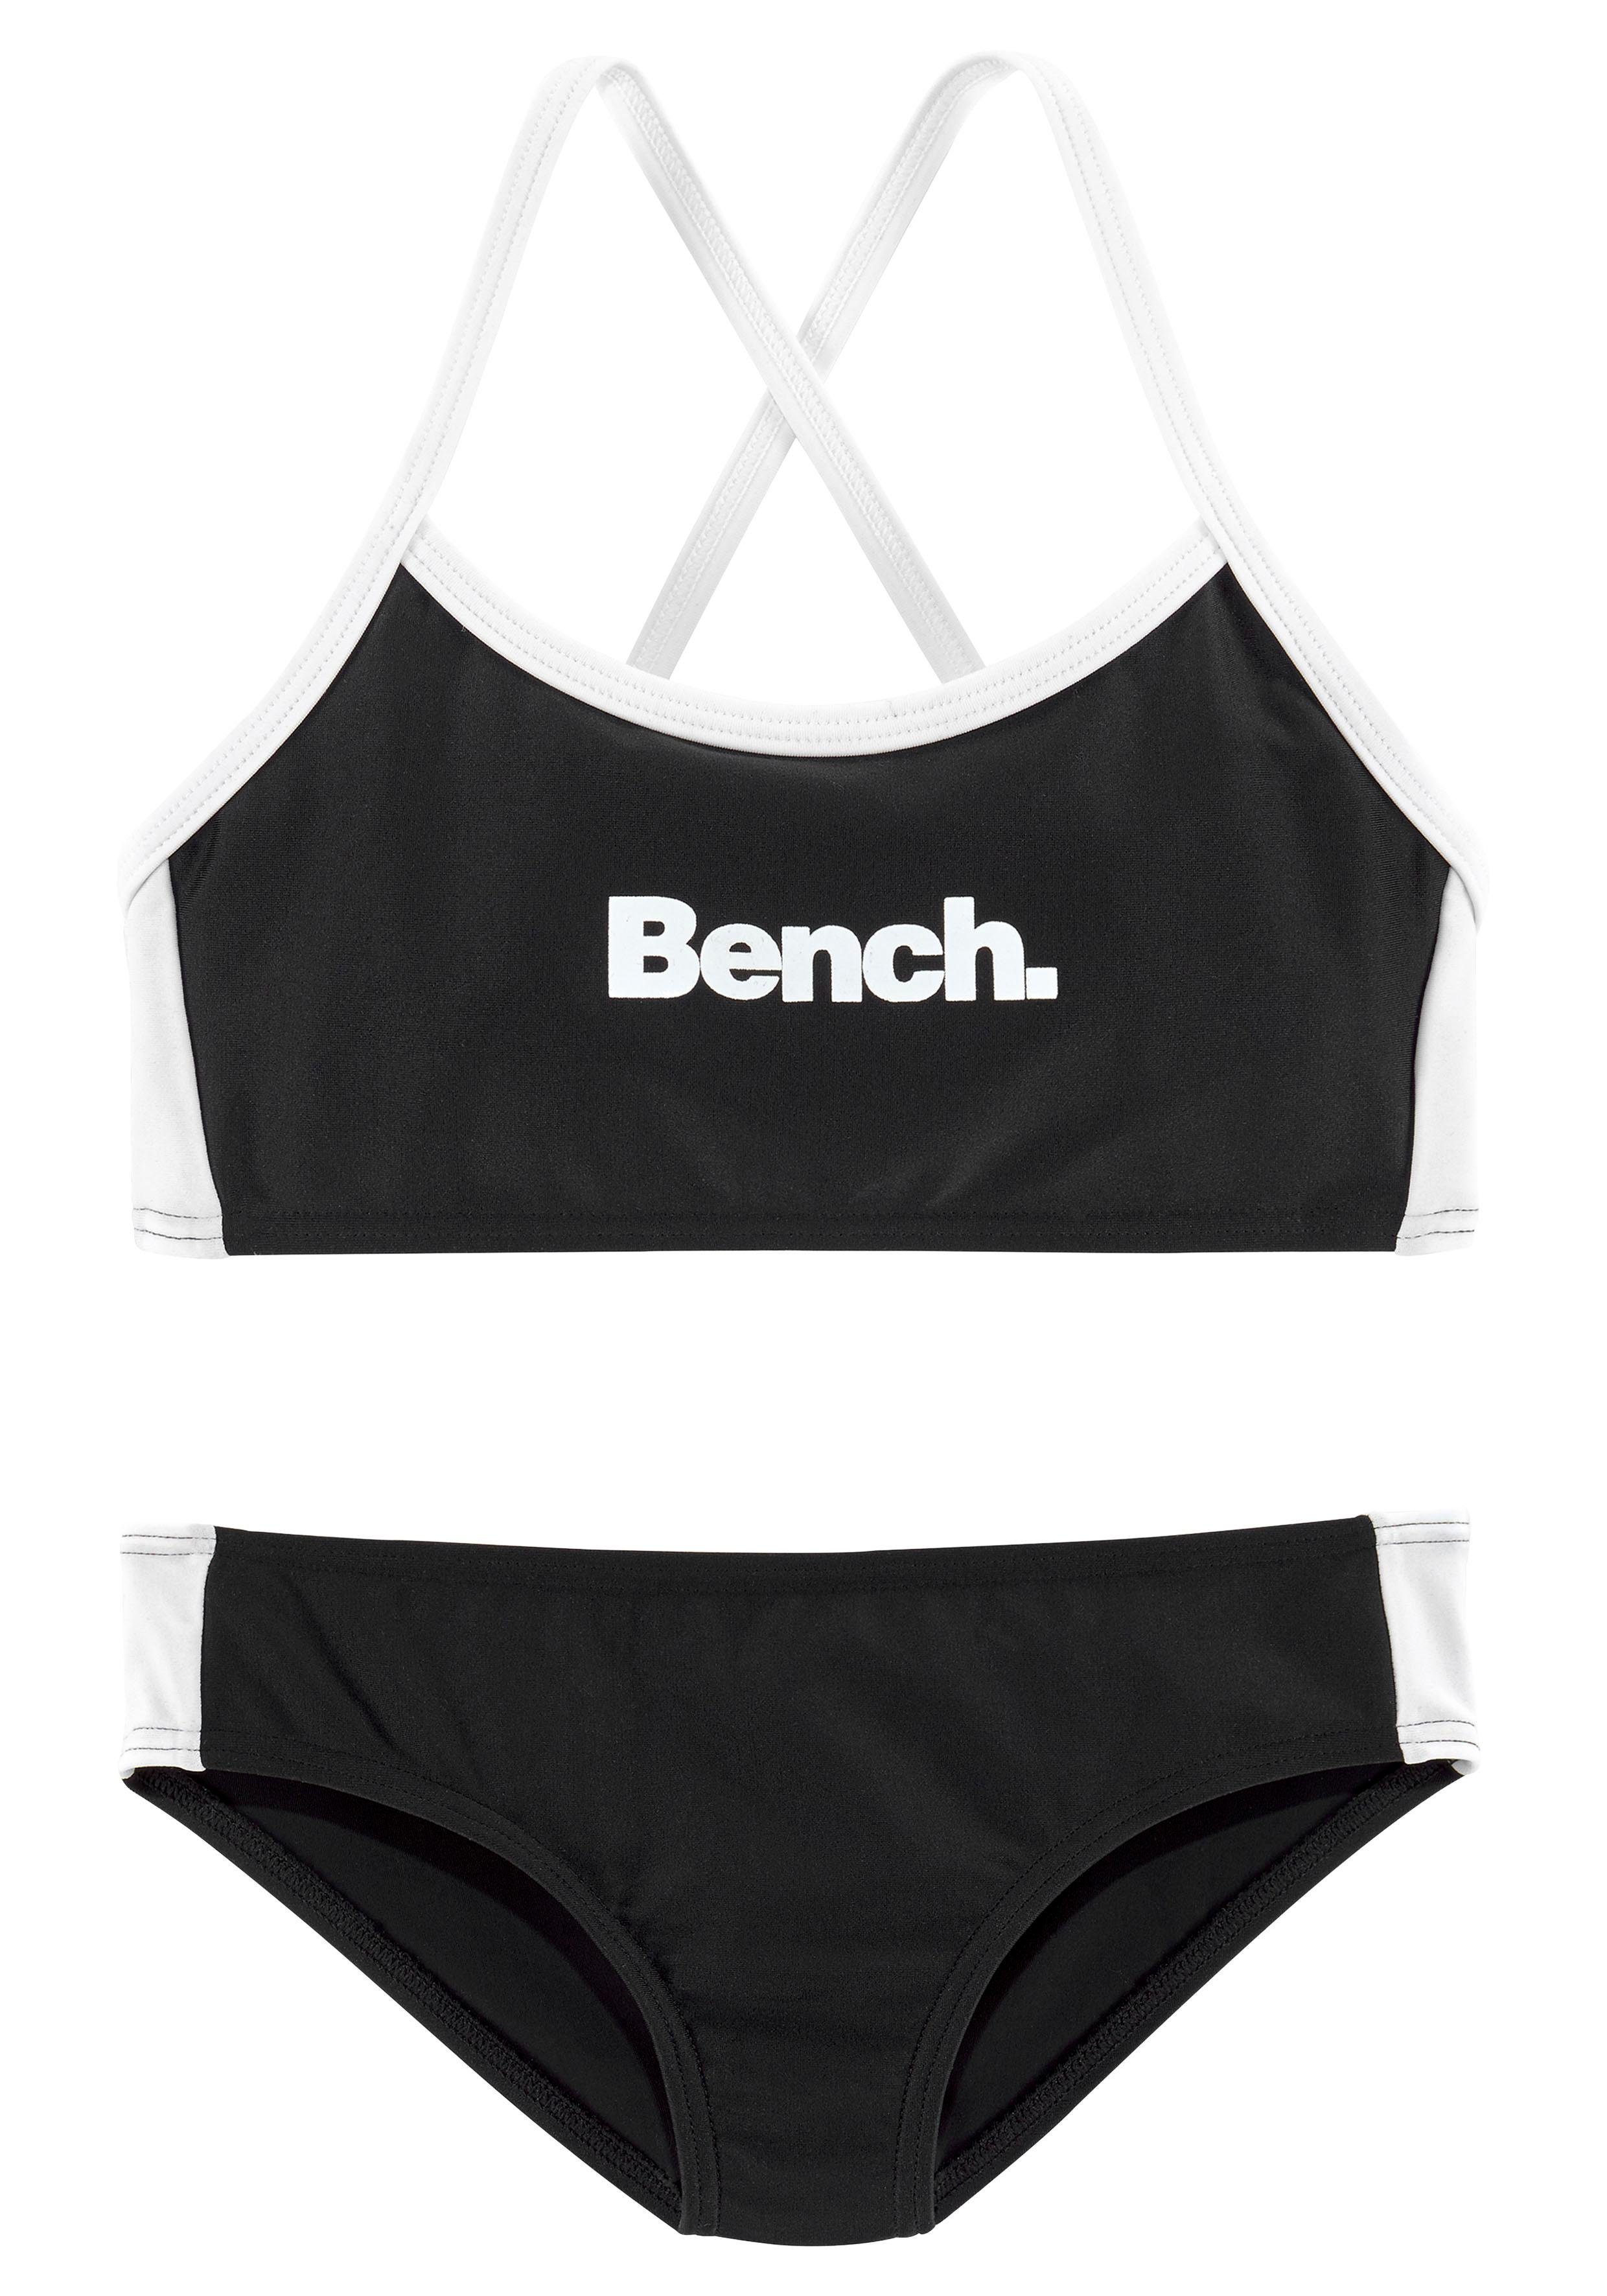 Bench. Bustier-Bikini mit gekreuzten Trägern schwarz-weiß